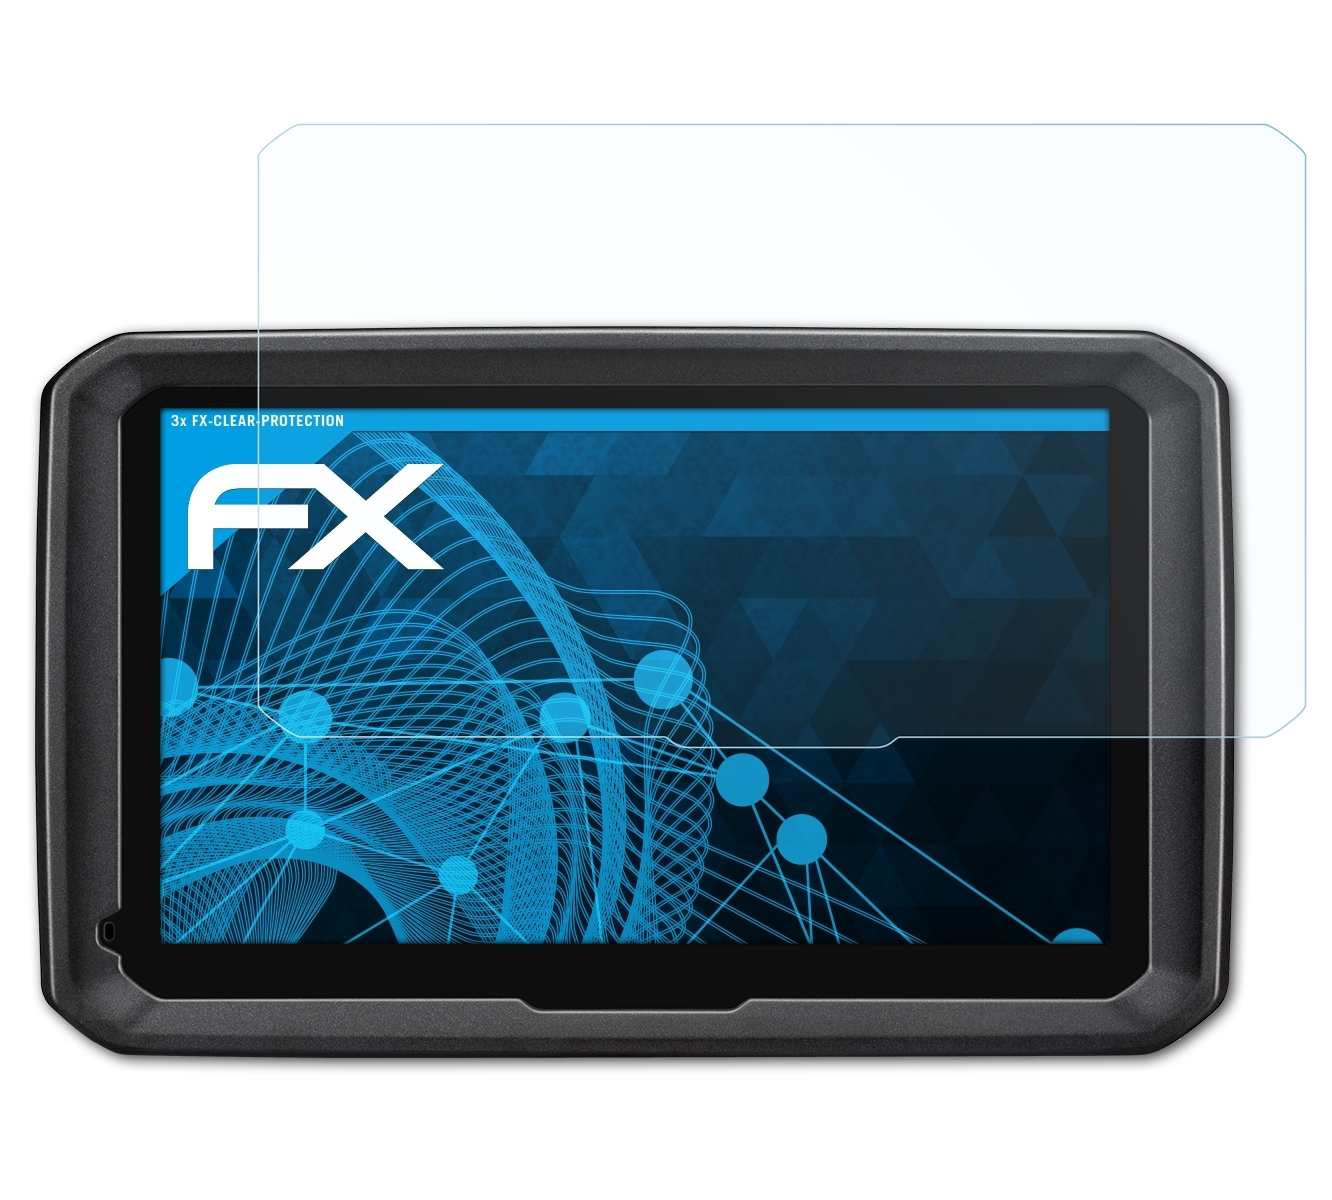 ATFOLIX 3x FX-Clear 770LMT-D) dezl Displayschutz(für Garmin